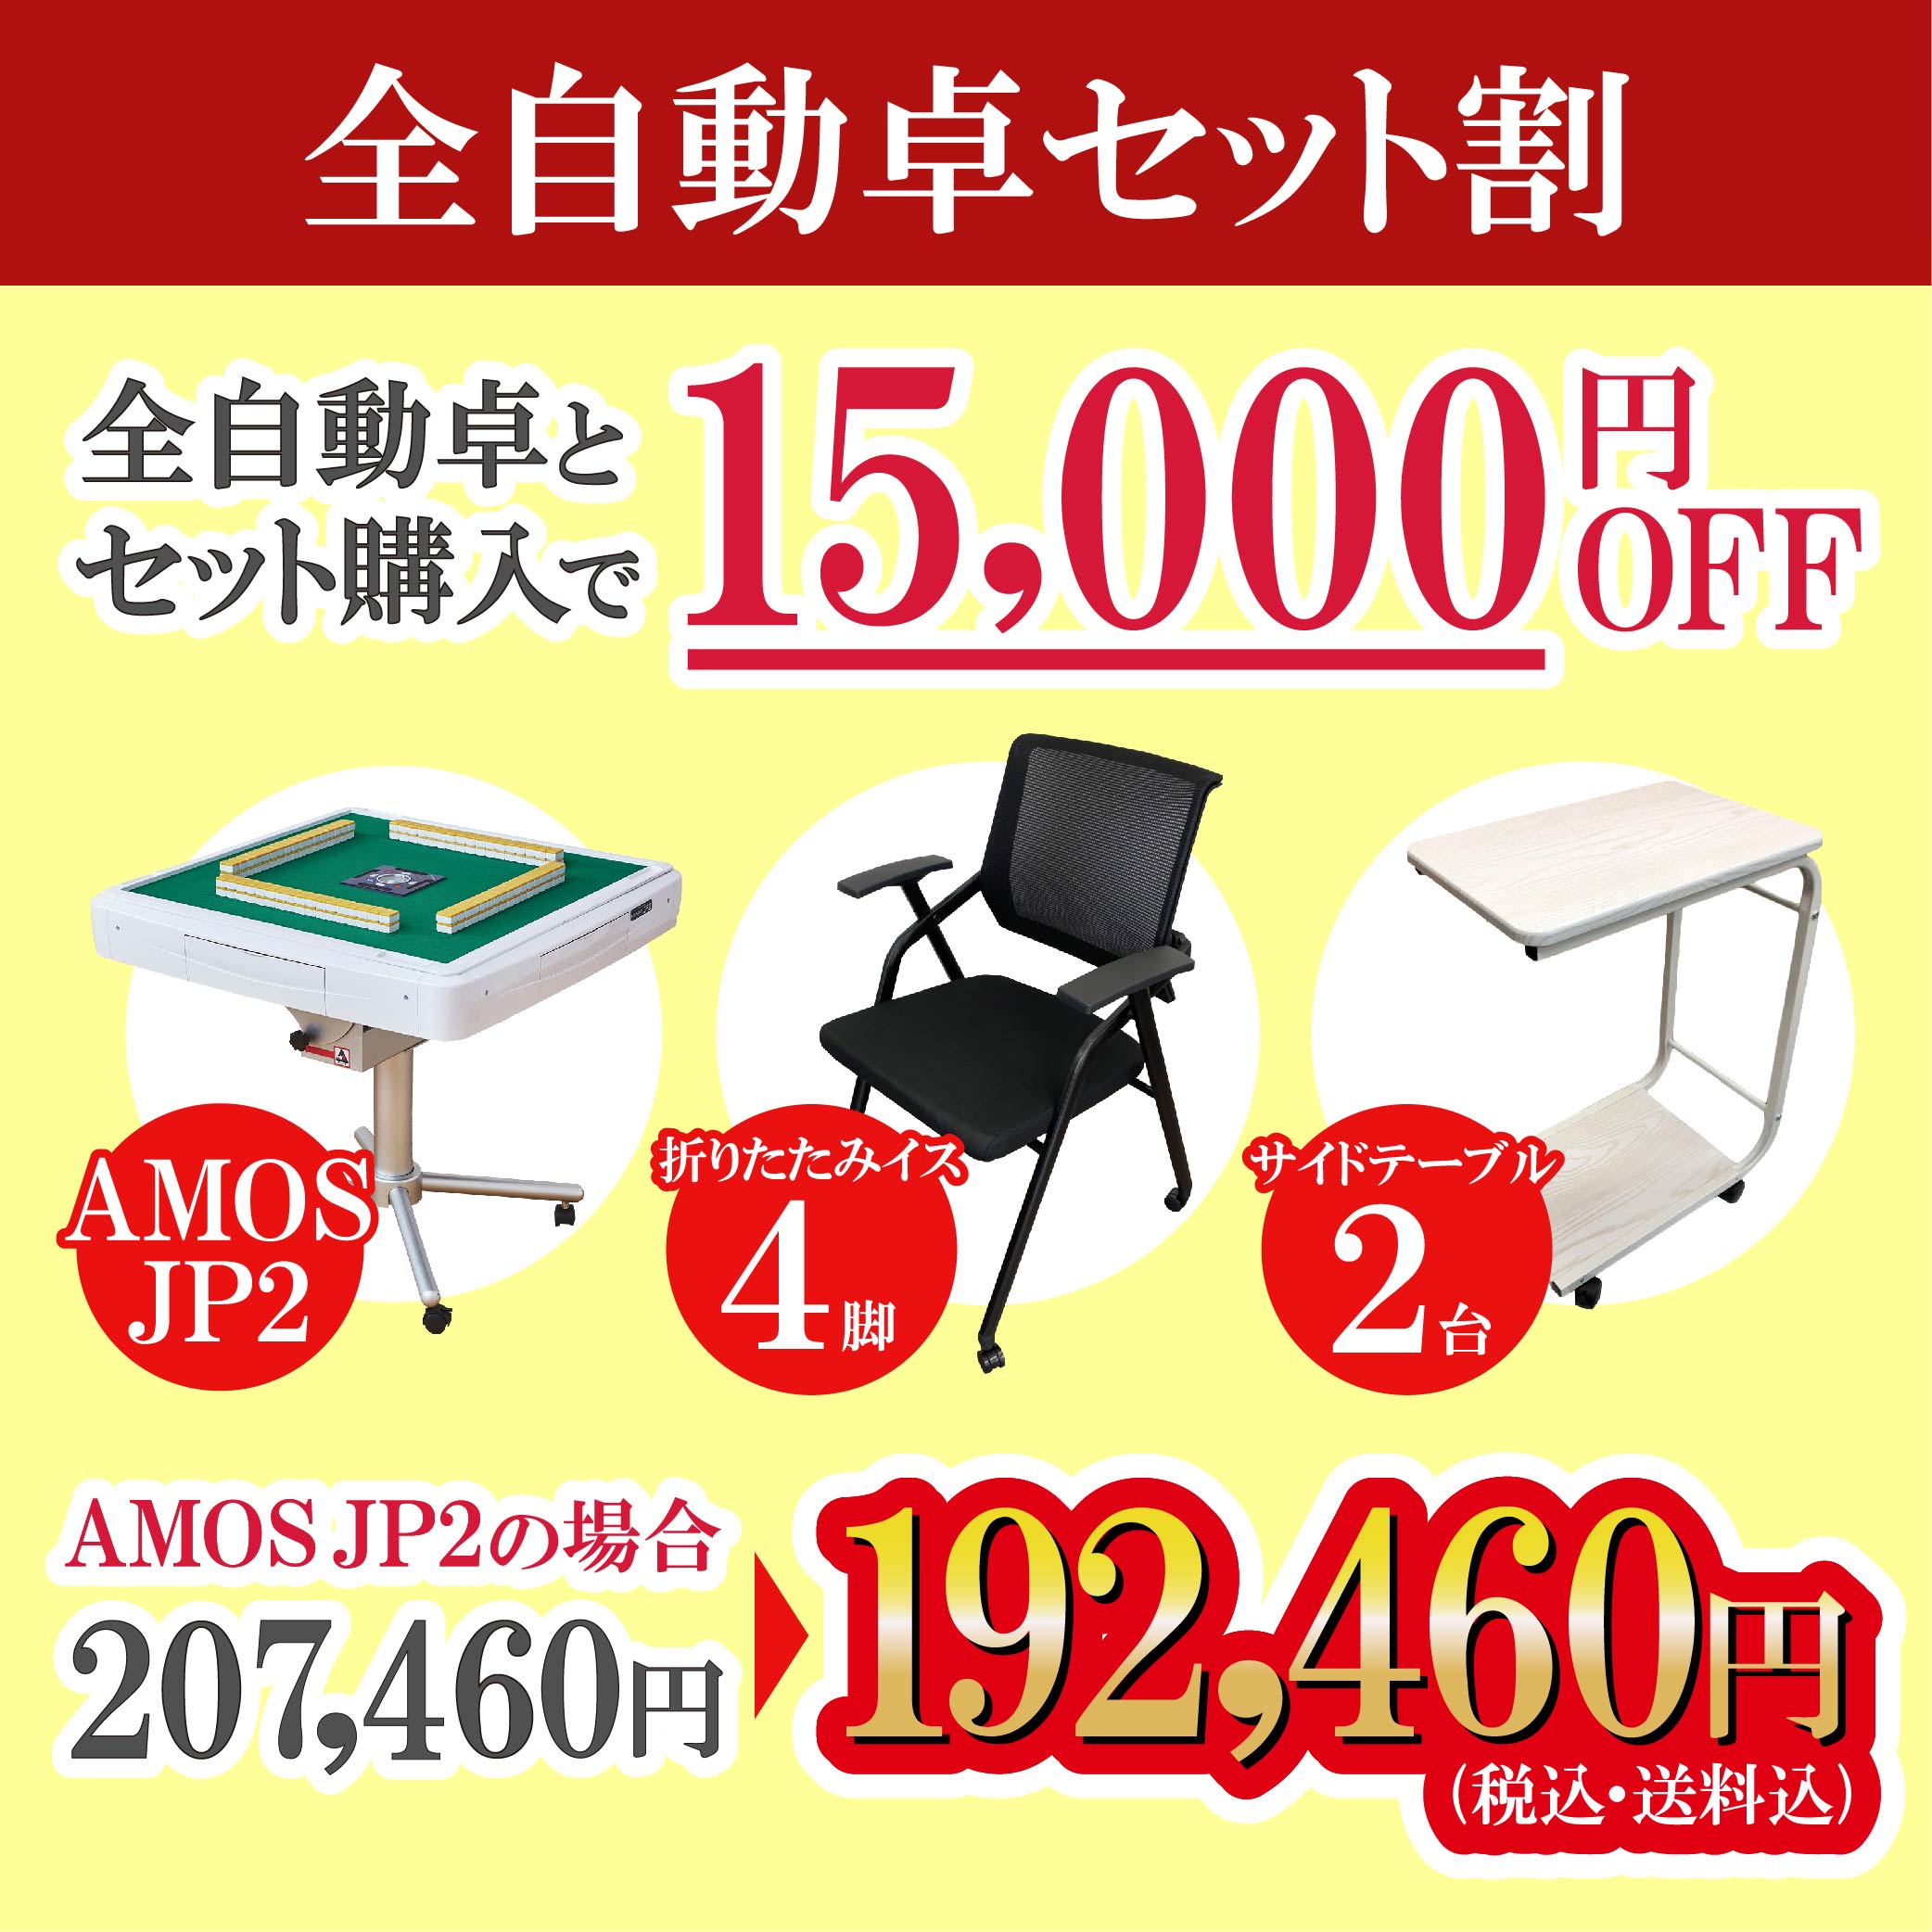 28,999円AMOS JP2 折りたたみタイプ